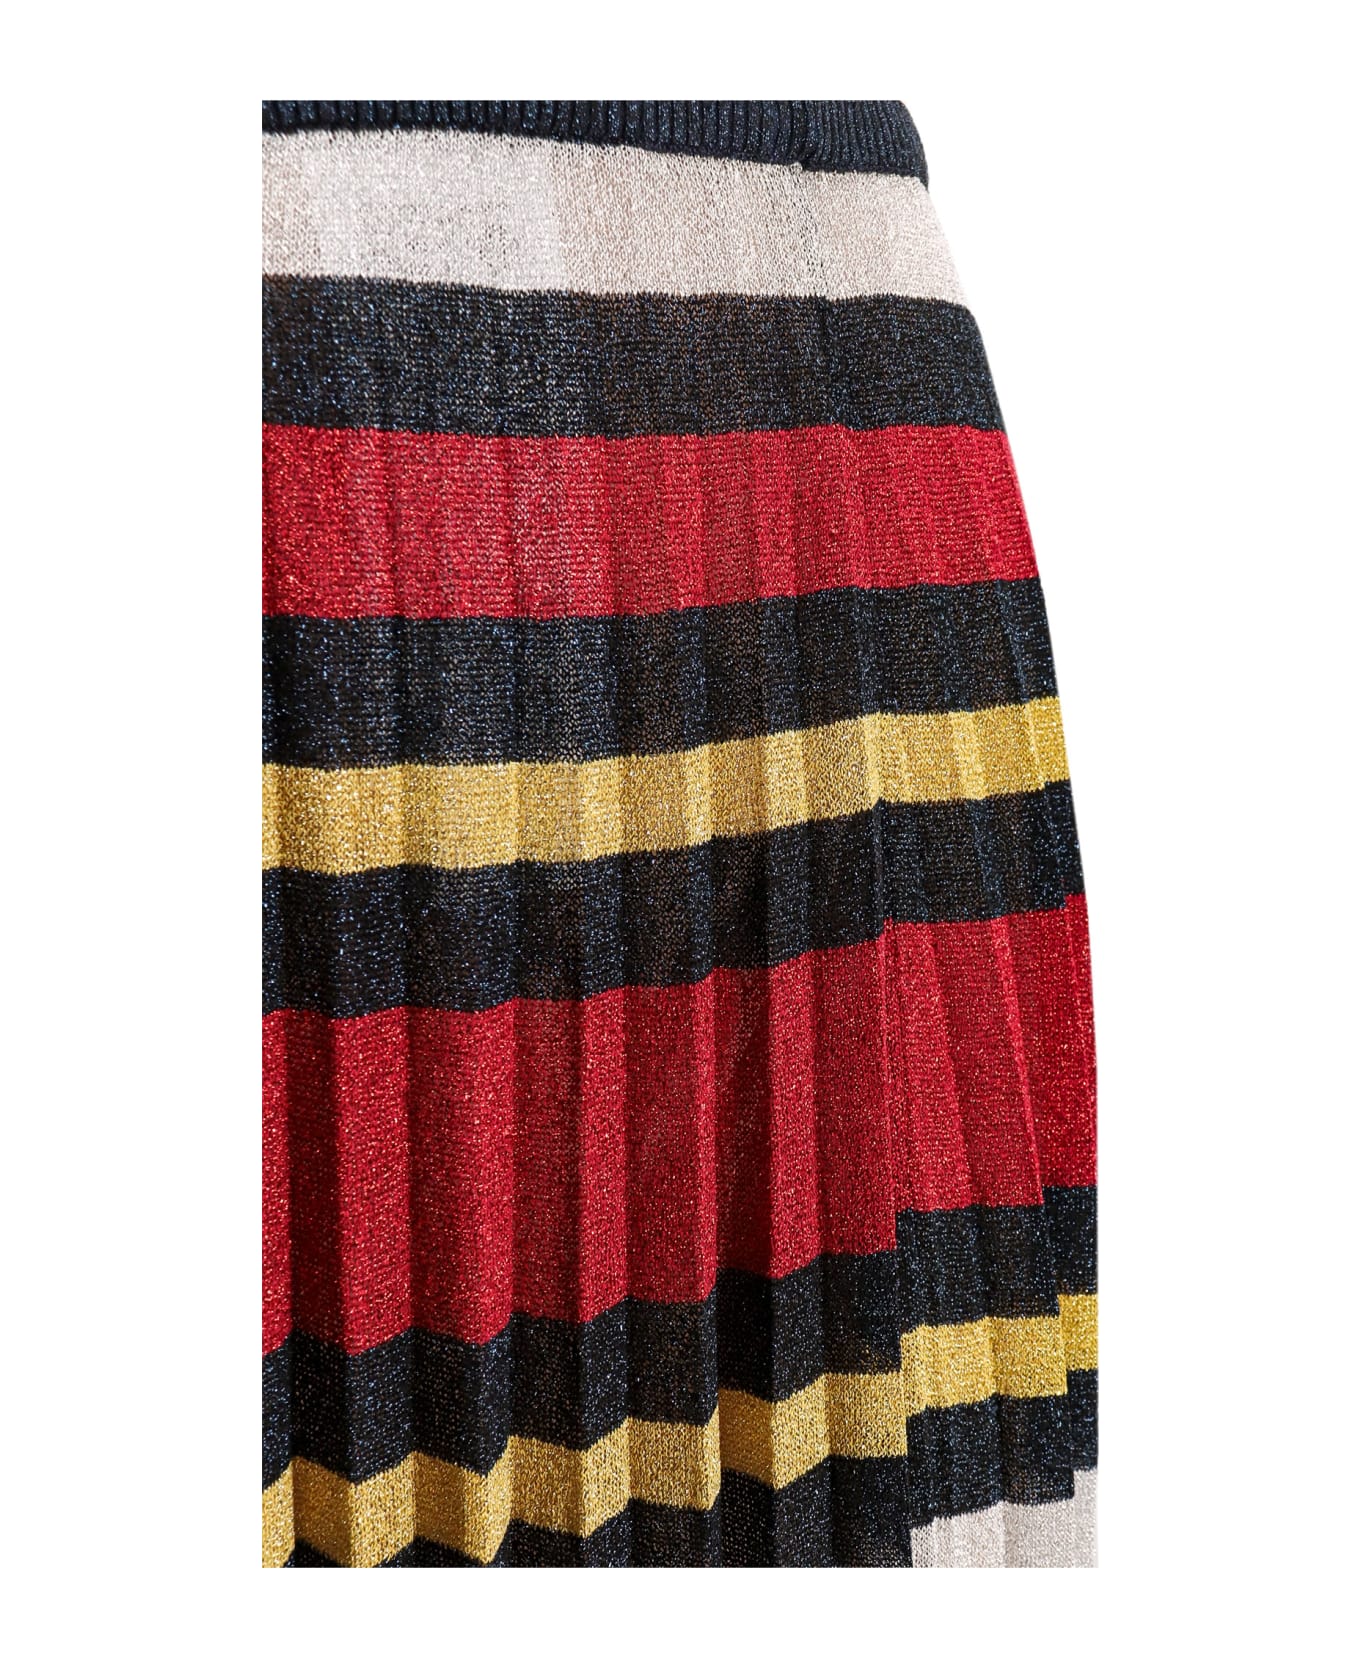 Gucci Mehen Midi Multicolor Pleated Striped Skirt In Lurex Woman - Multicolor